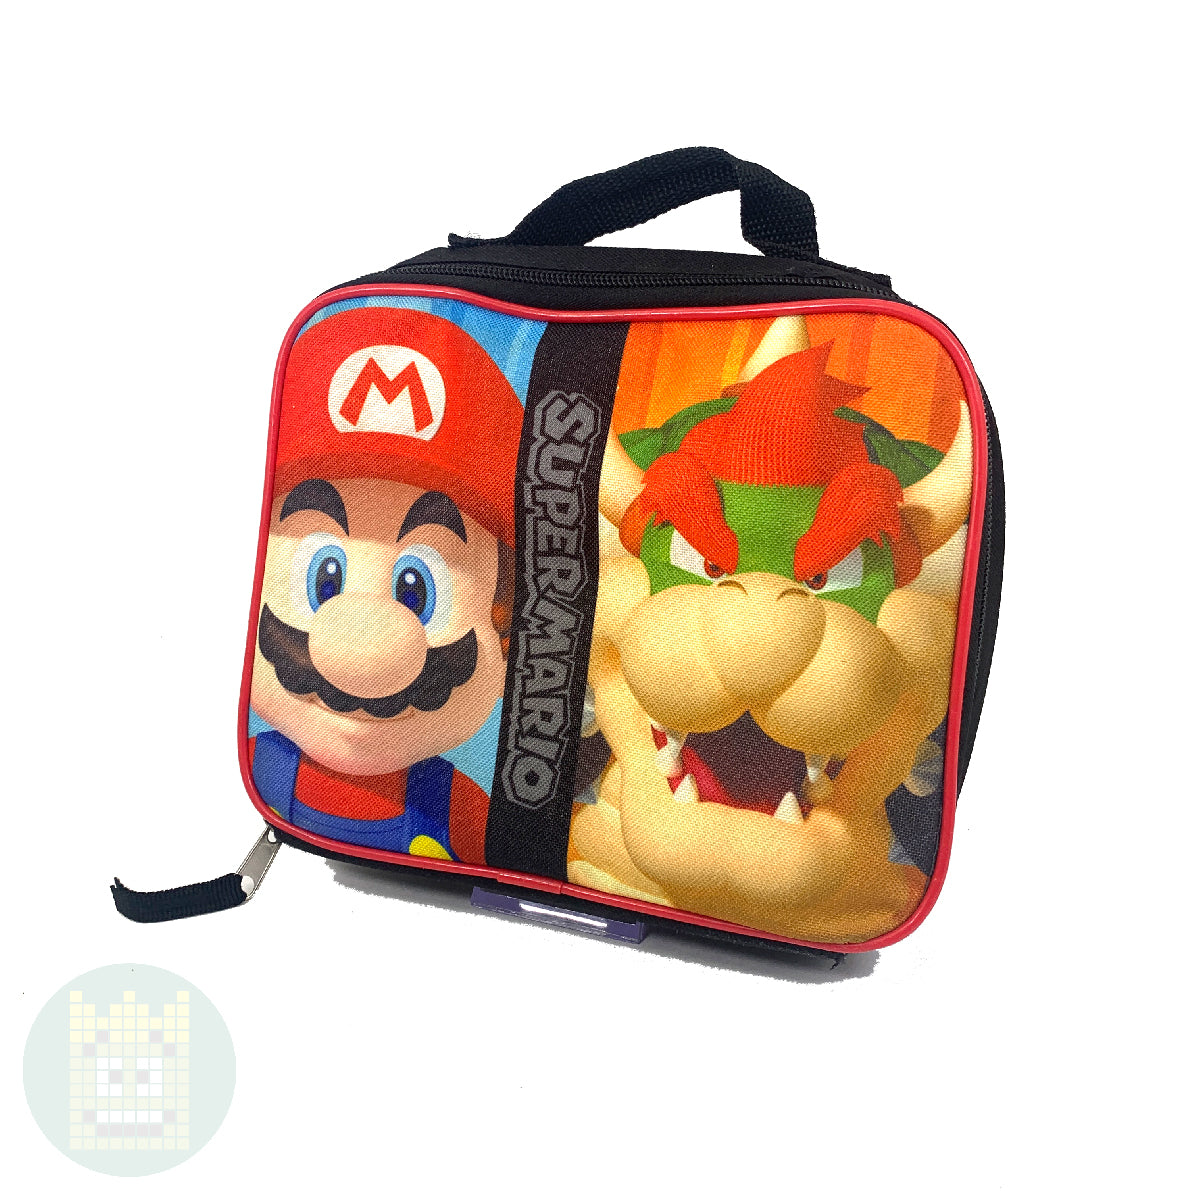 Super Mario Bros - Super Bowser - Lunch Bag NN43771